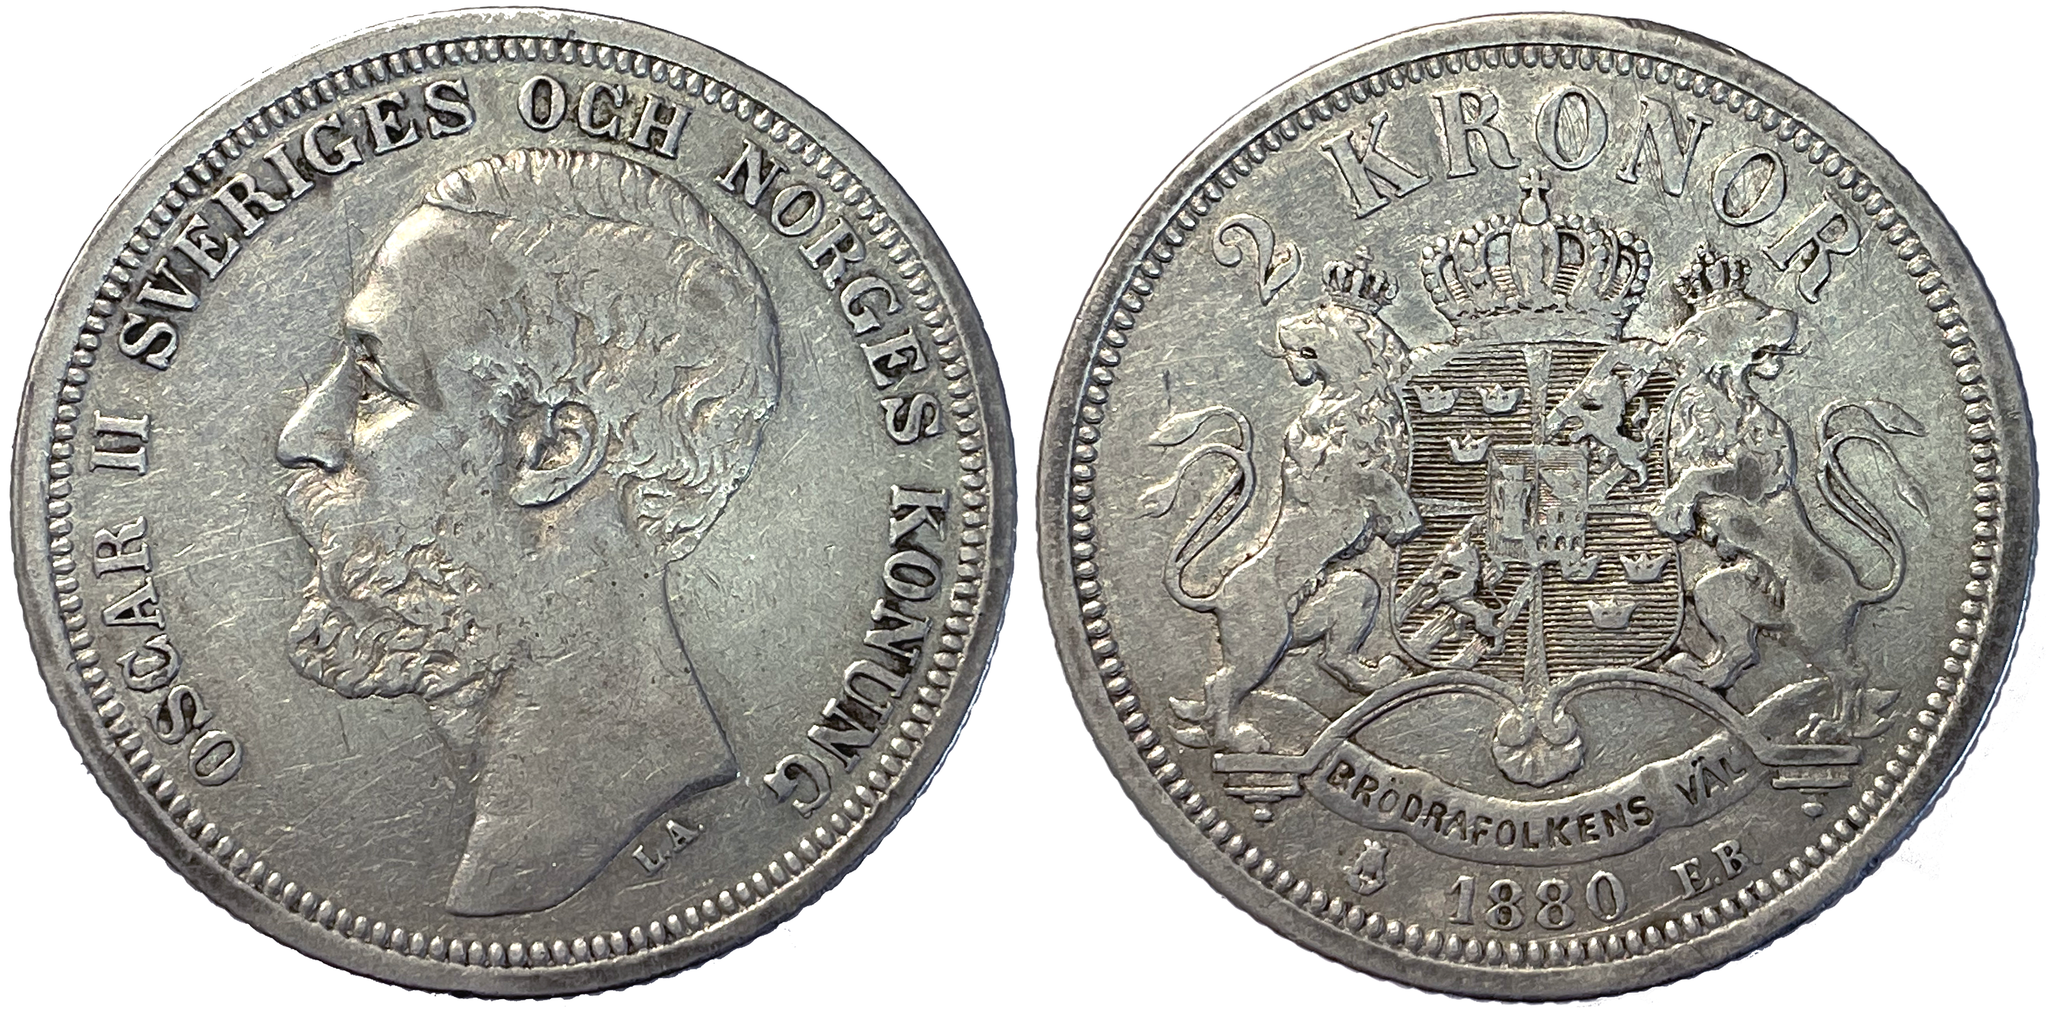 Oskar II - 2 kronor 1880 med OCH - Ett tilltalande exemplar